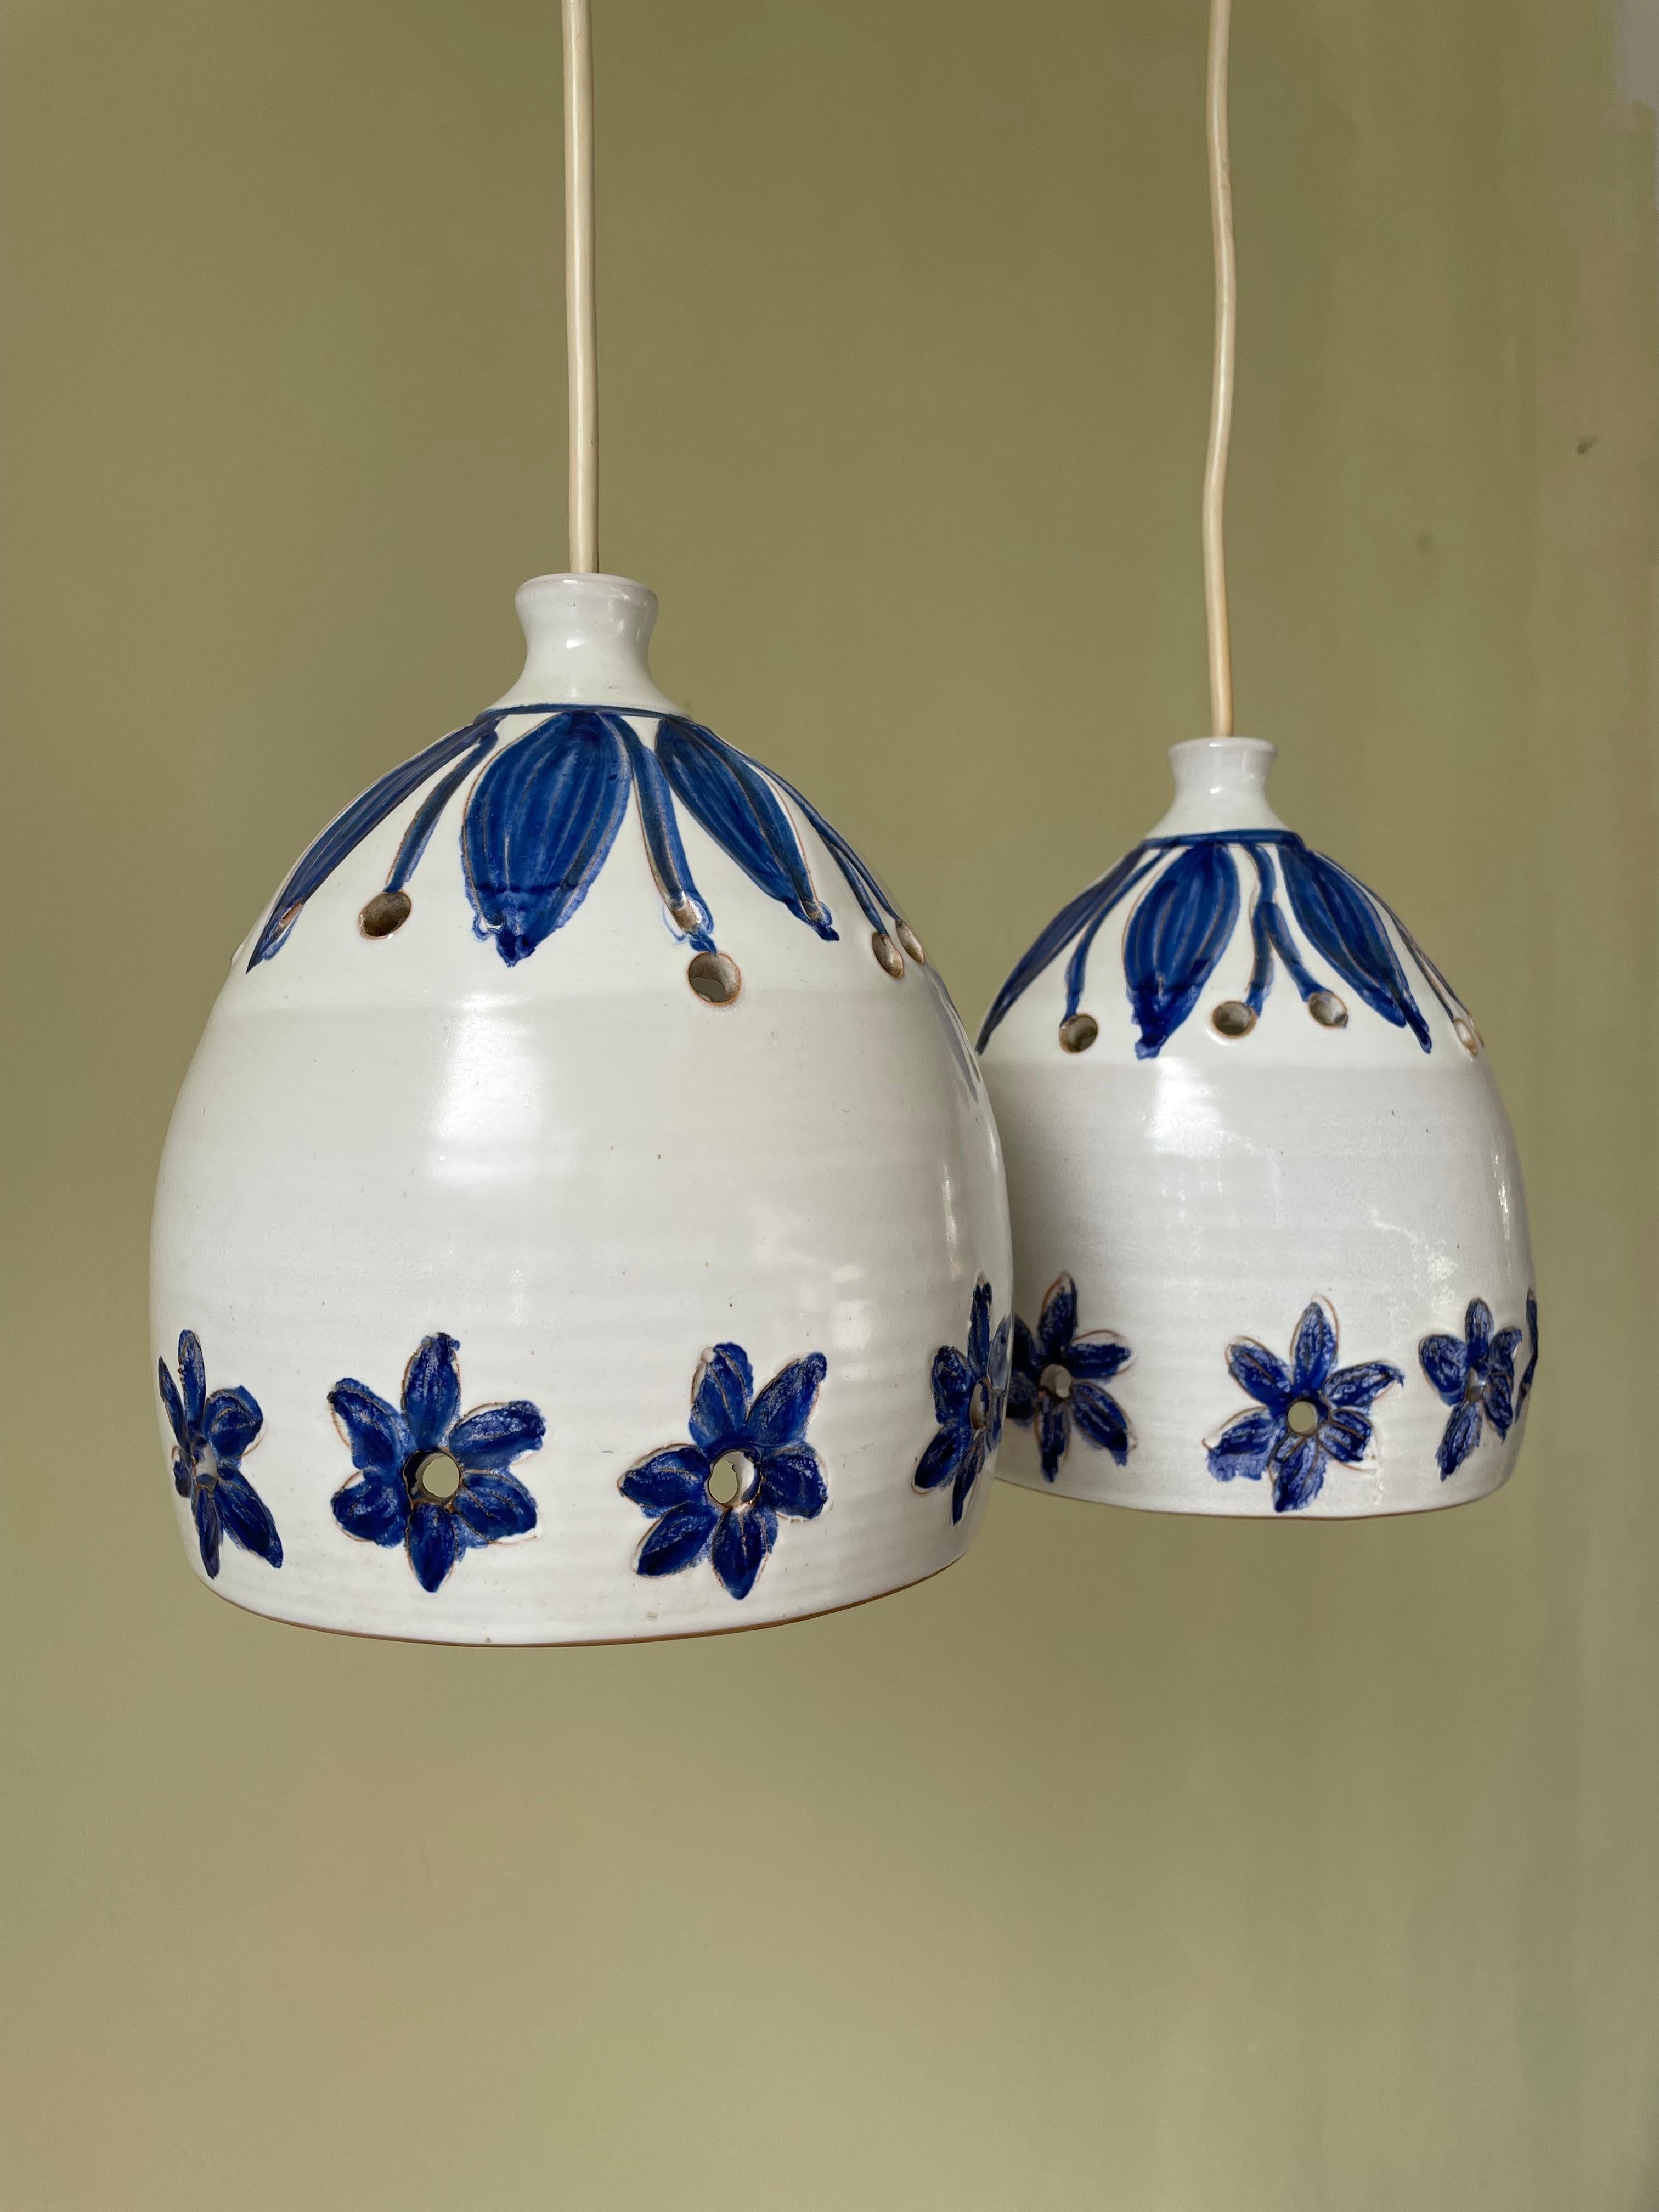 Satz von zwei handgefertigten organischen Keramikanhängern aus der Mitte des Jahrhunderts, weiß glasiert mit handgeschnitzten und handbemalten blauen Blumen und Blättern. Kreisförmige Perforationen an der Ober- und Unterseite lassen das Licht